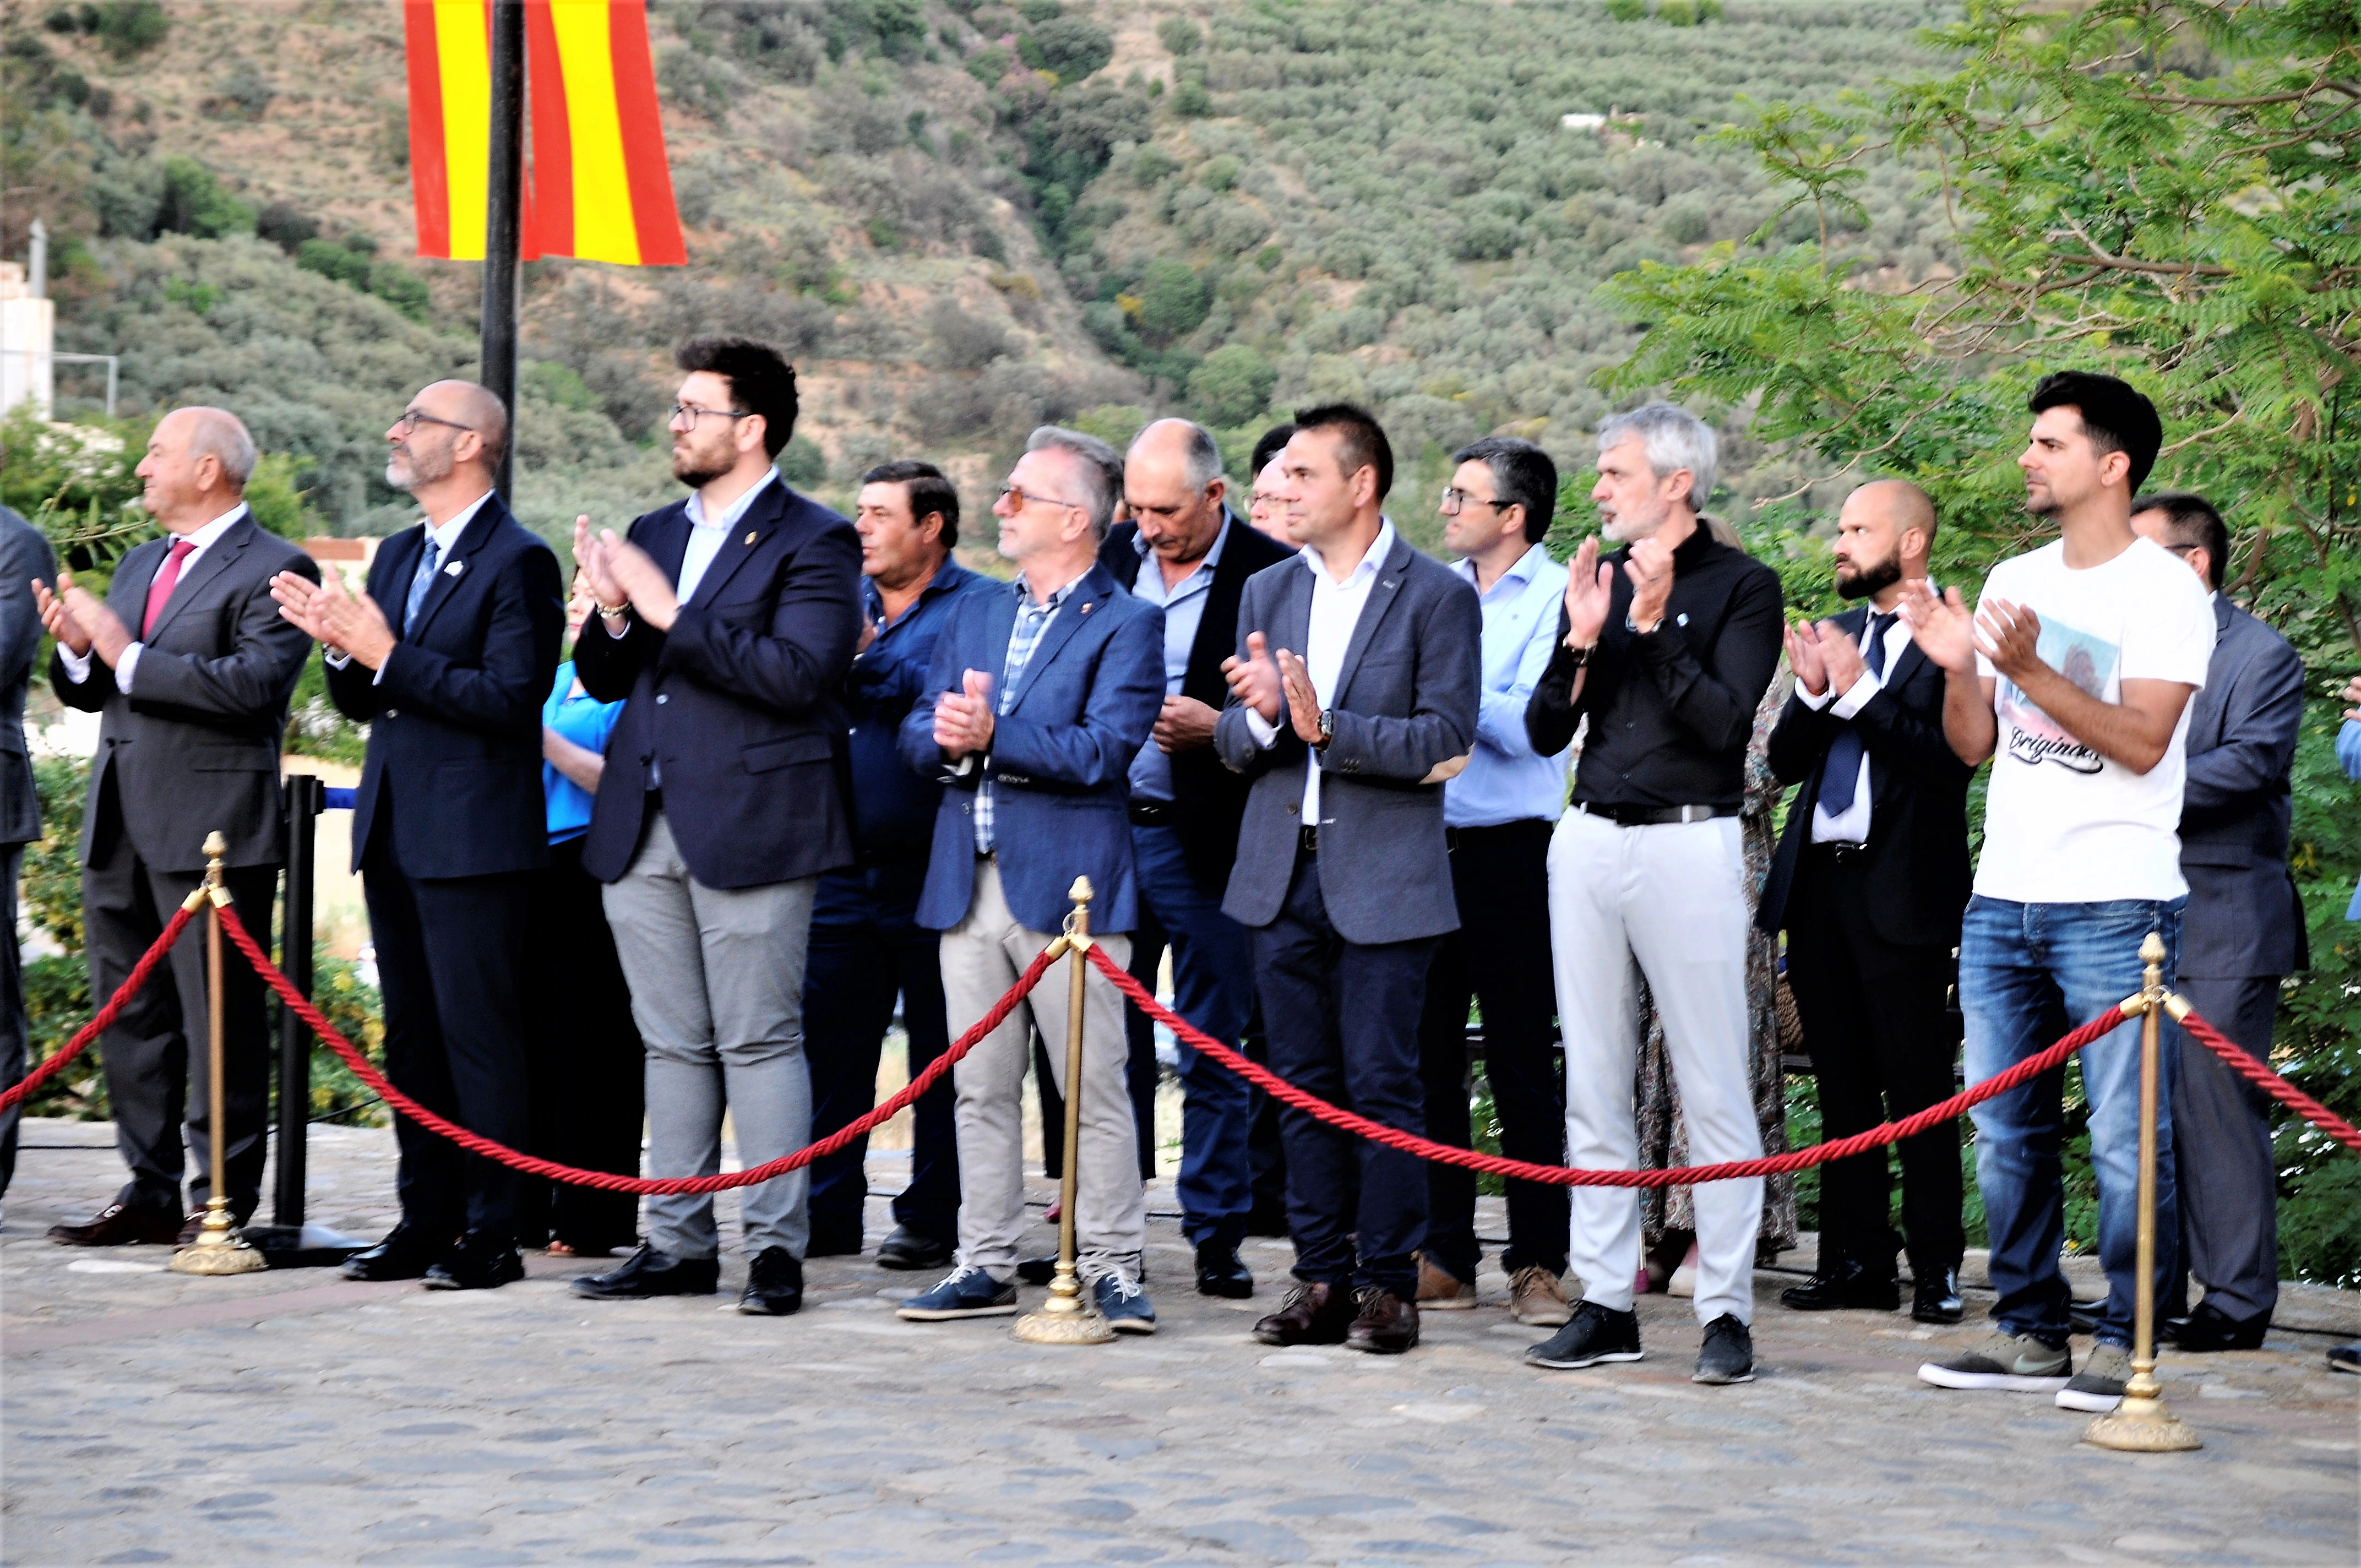 El MADOC asiste al acto de colocación de una Bandera de España en el mirador del municipio alpujarreño